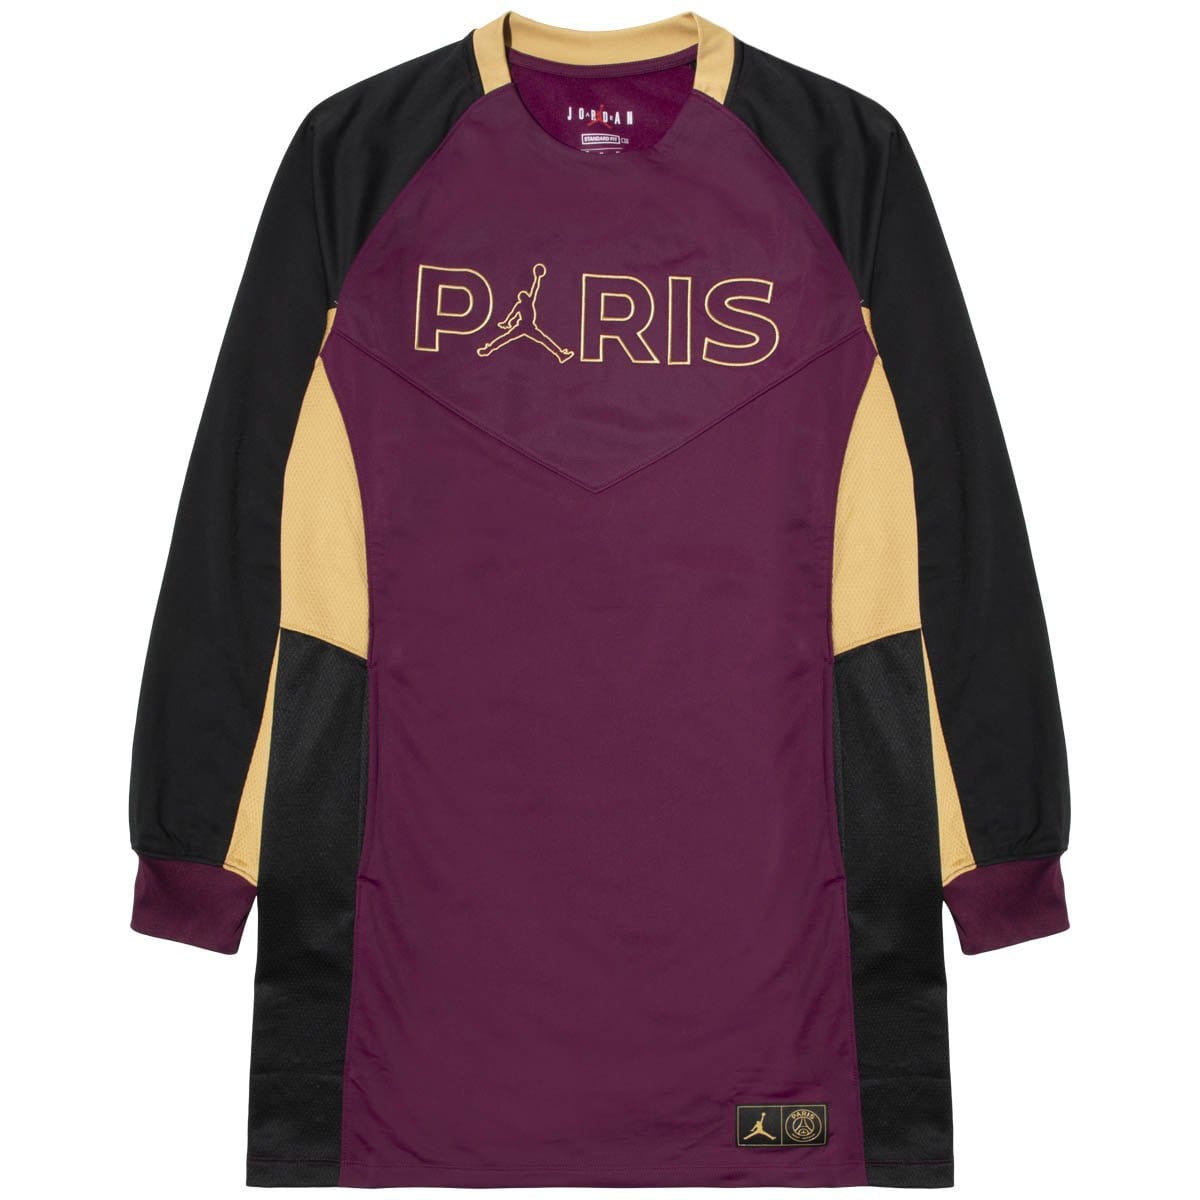 Air Jordan Shirts Paris Saint Germain WOMEN'S DRESS